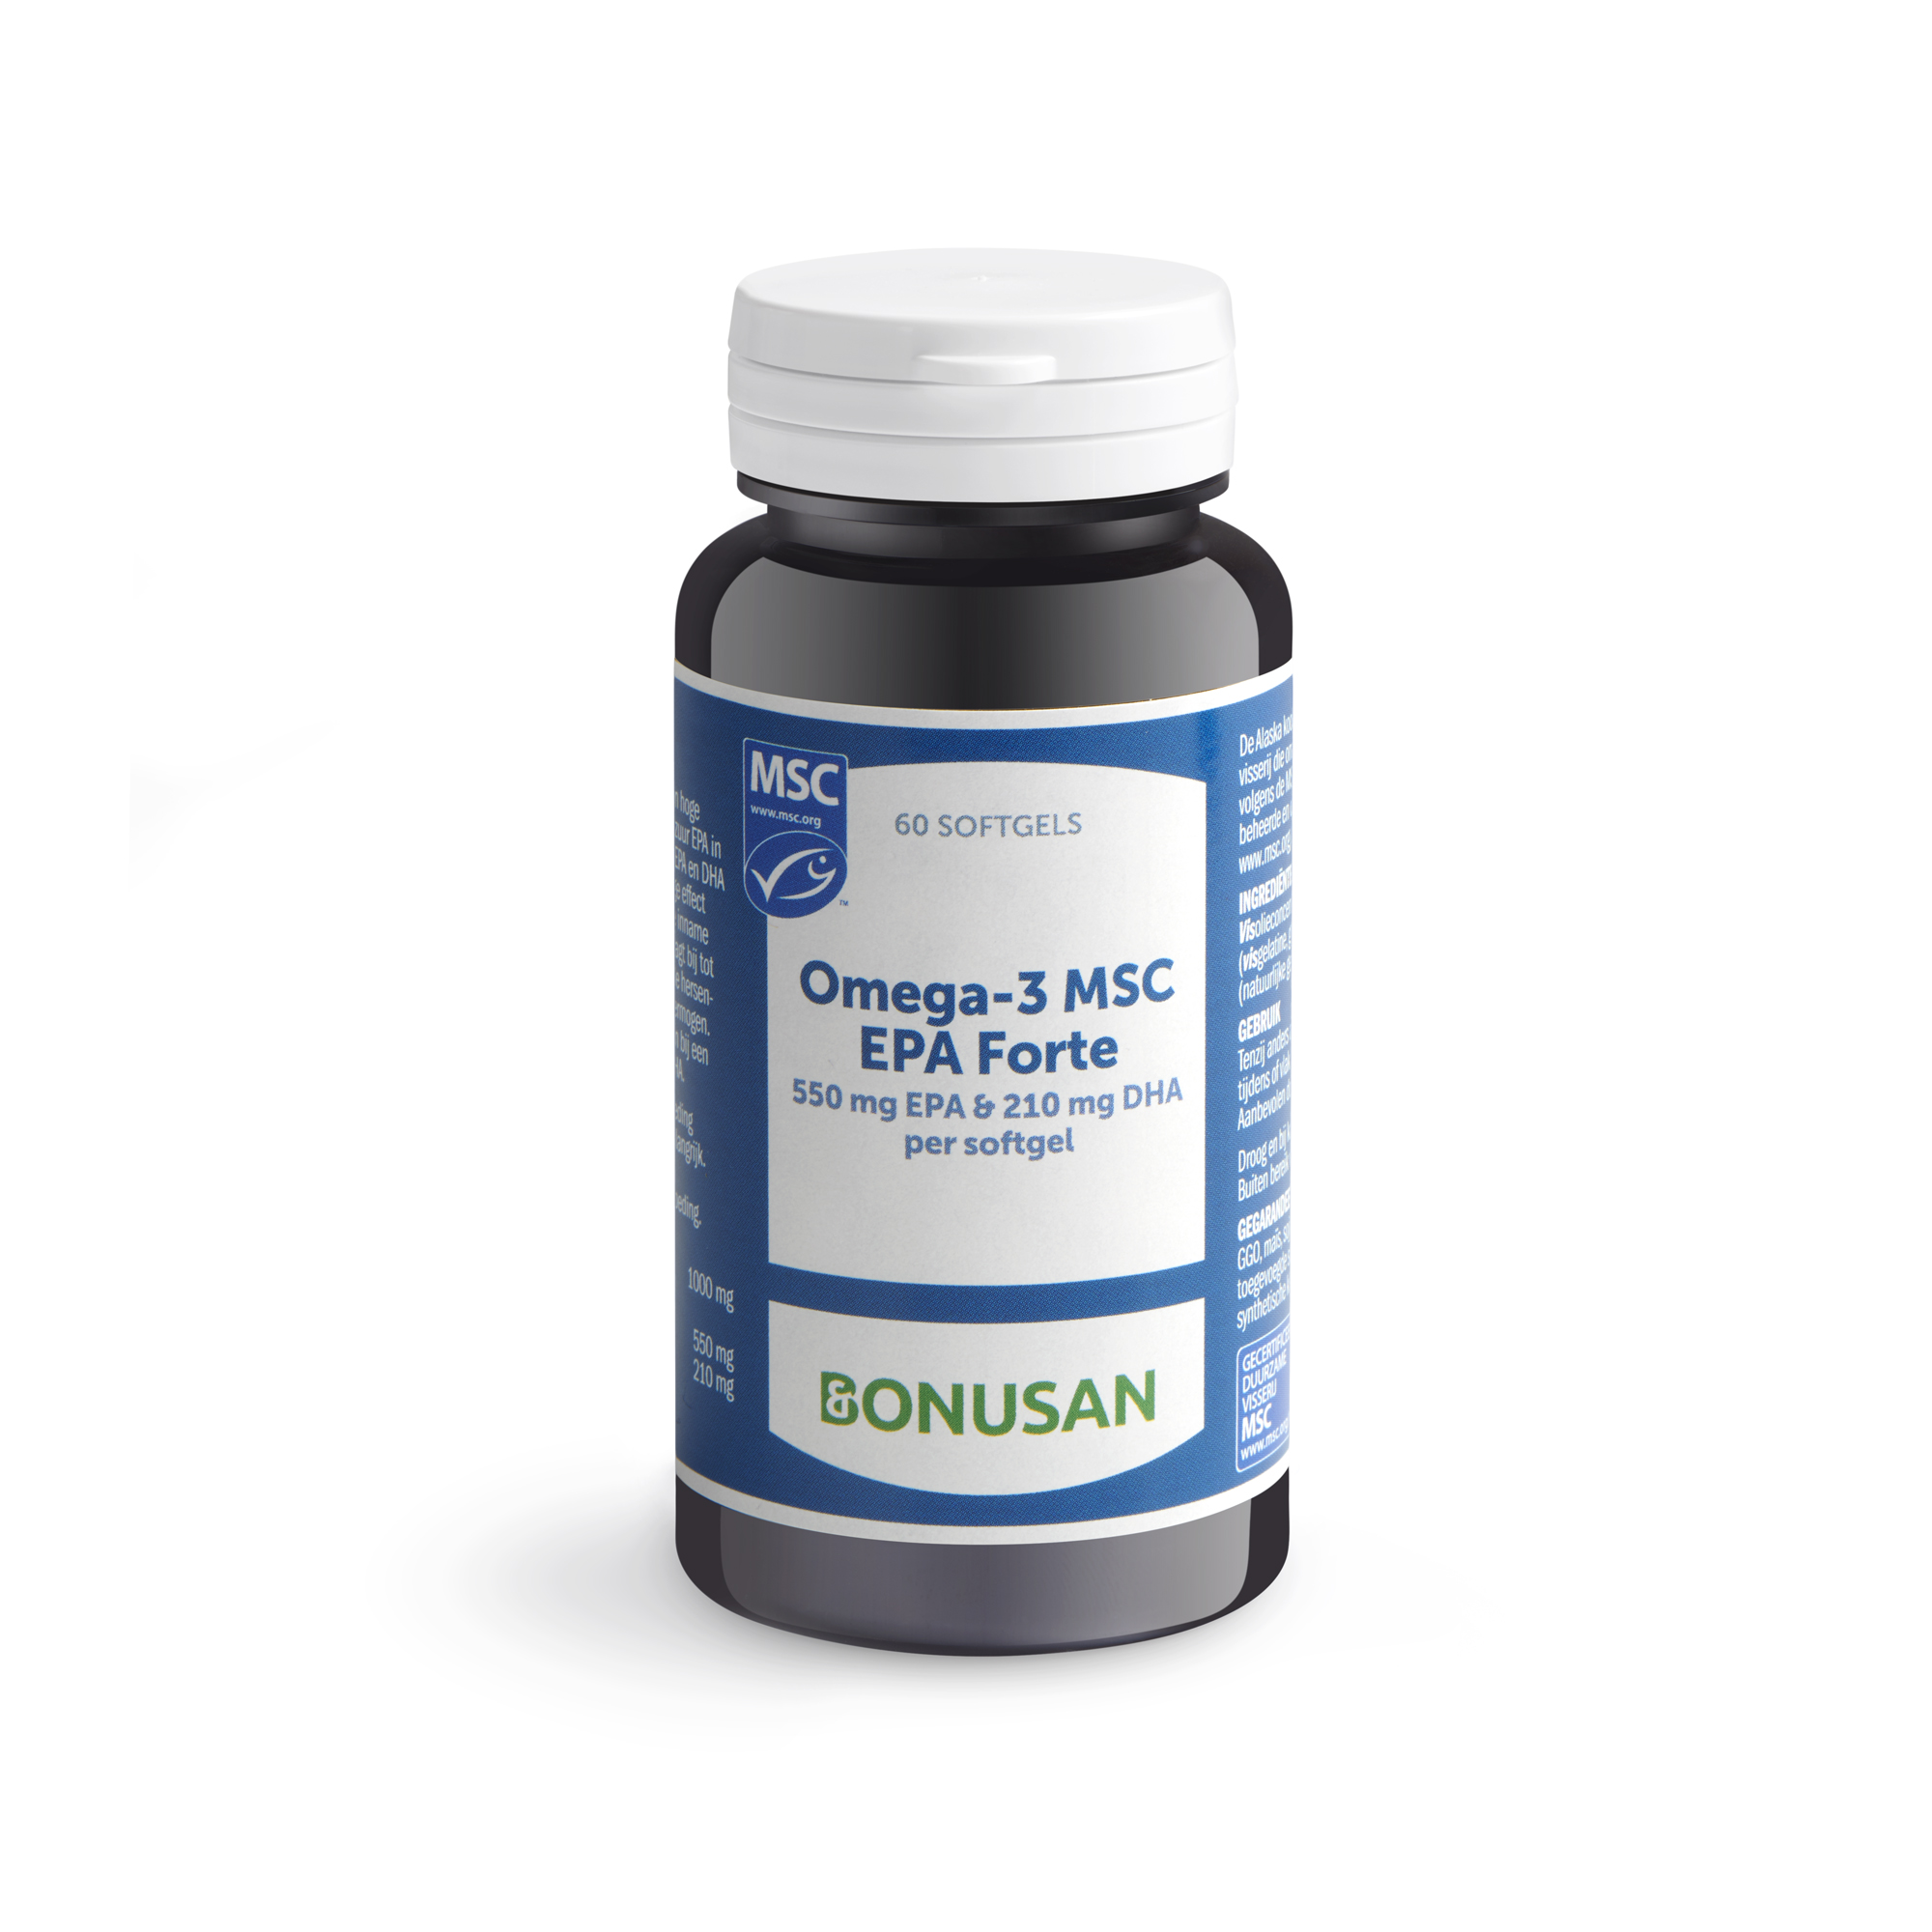 Omega-3 MSC EPA Forte